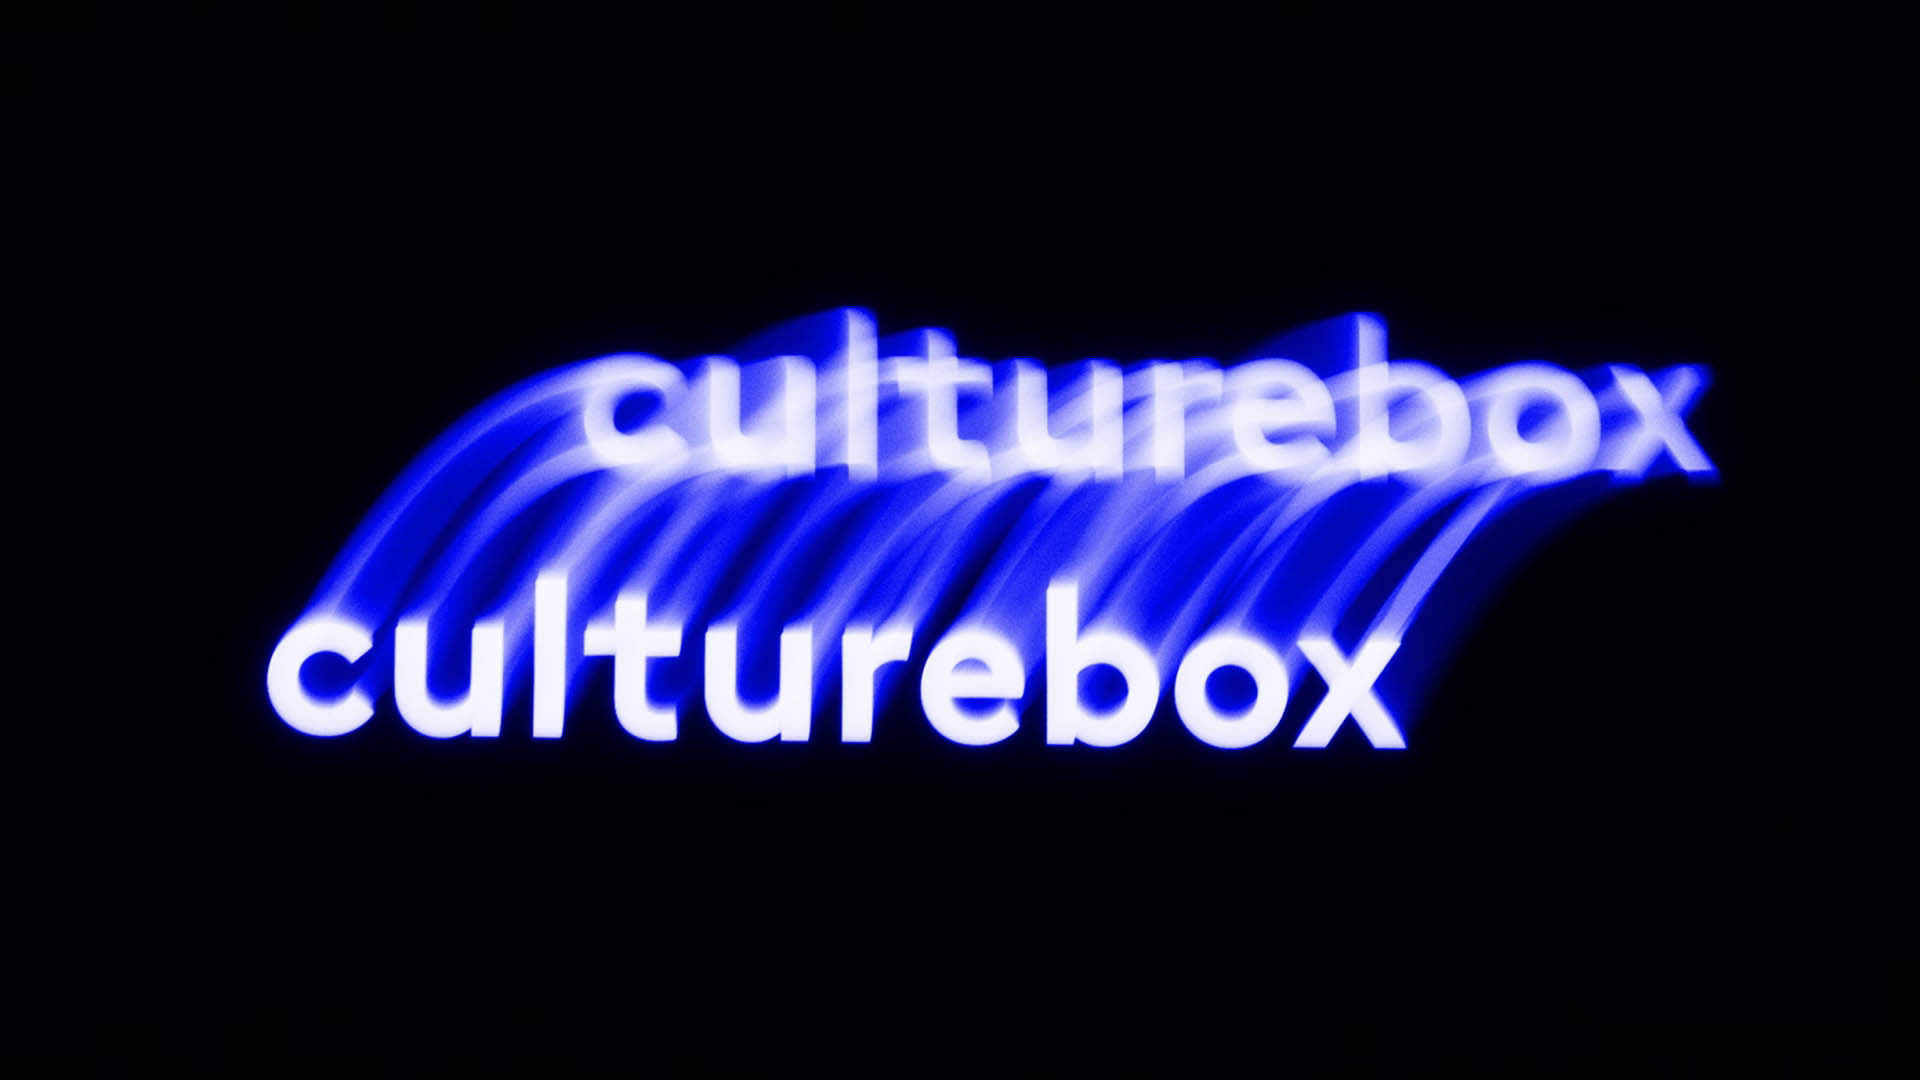 Félix Farjas - Culturebox